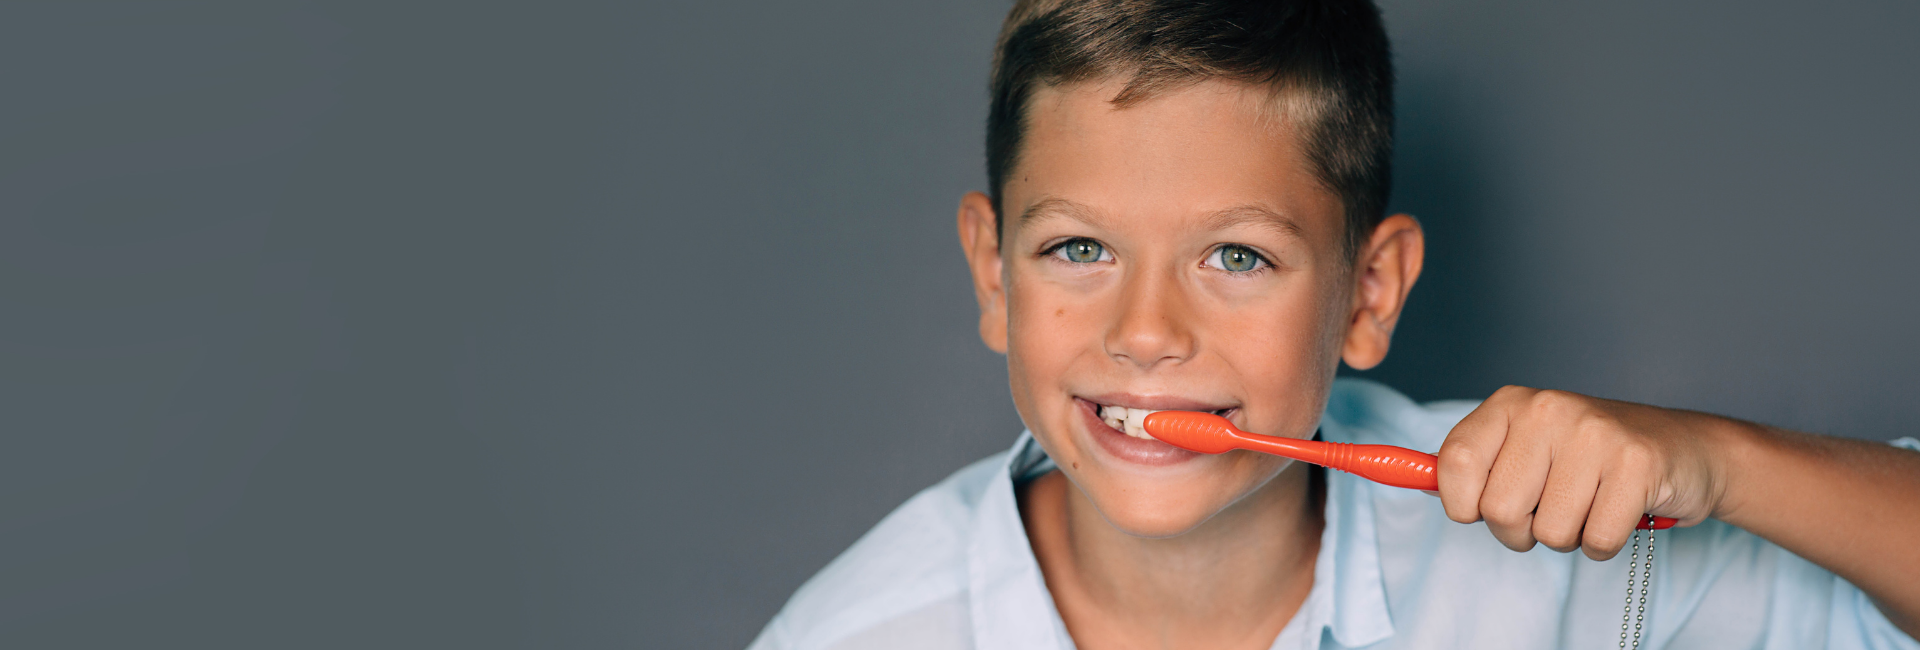 importancia de la odontopediatría